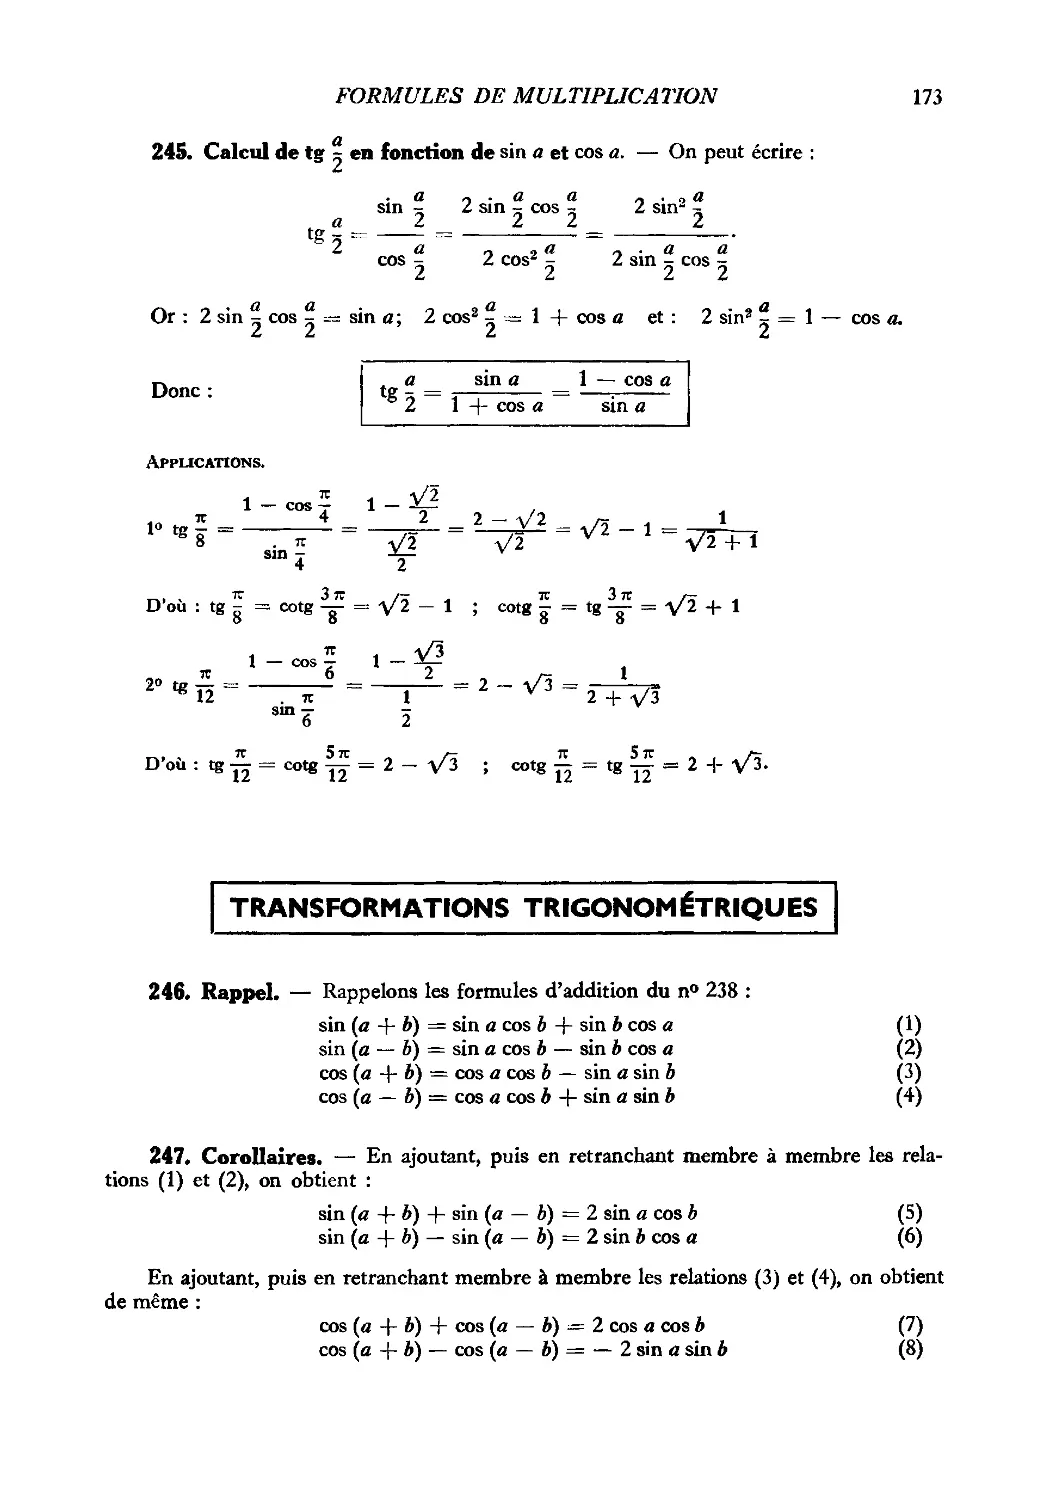 Transformations trigonométriques
247. Corollaires